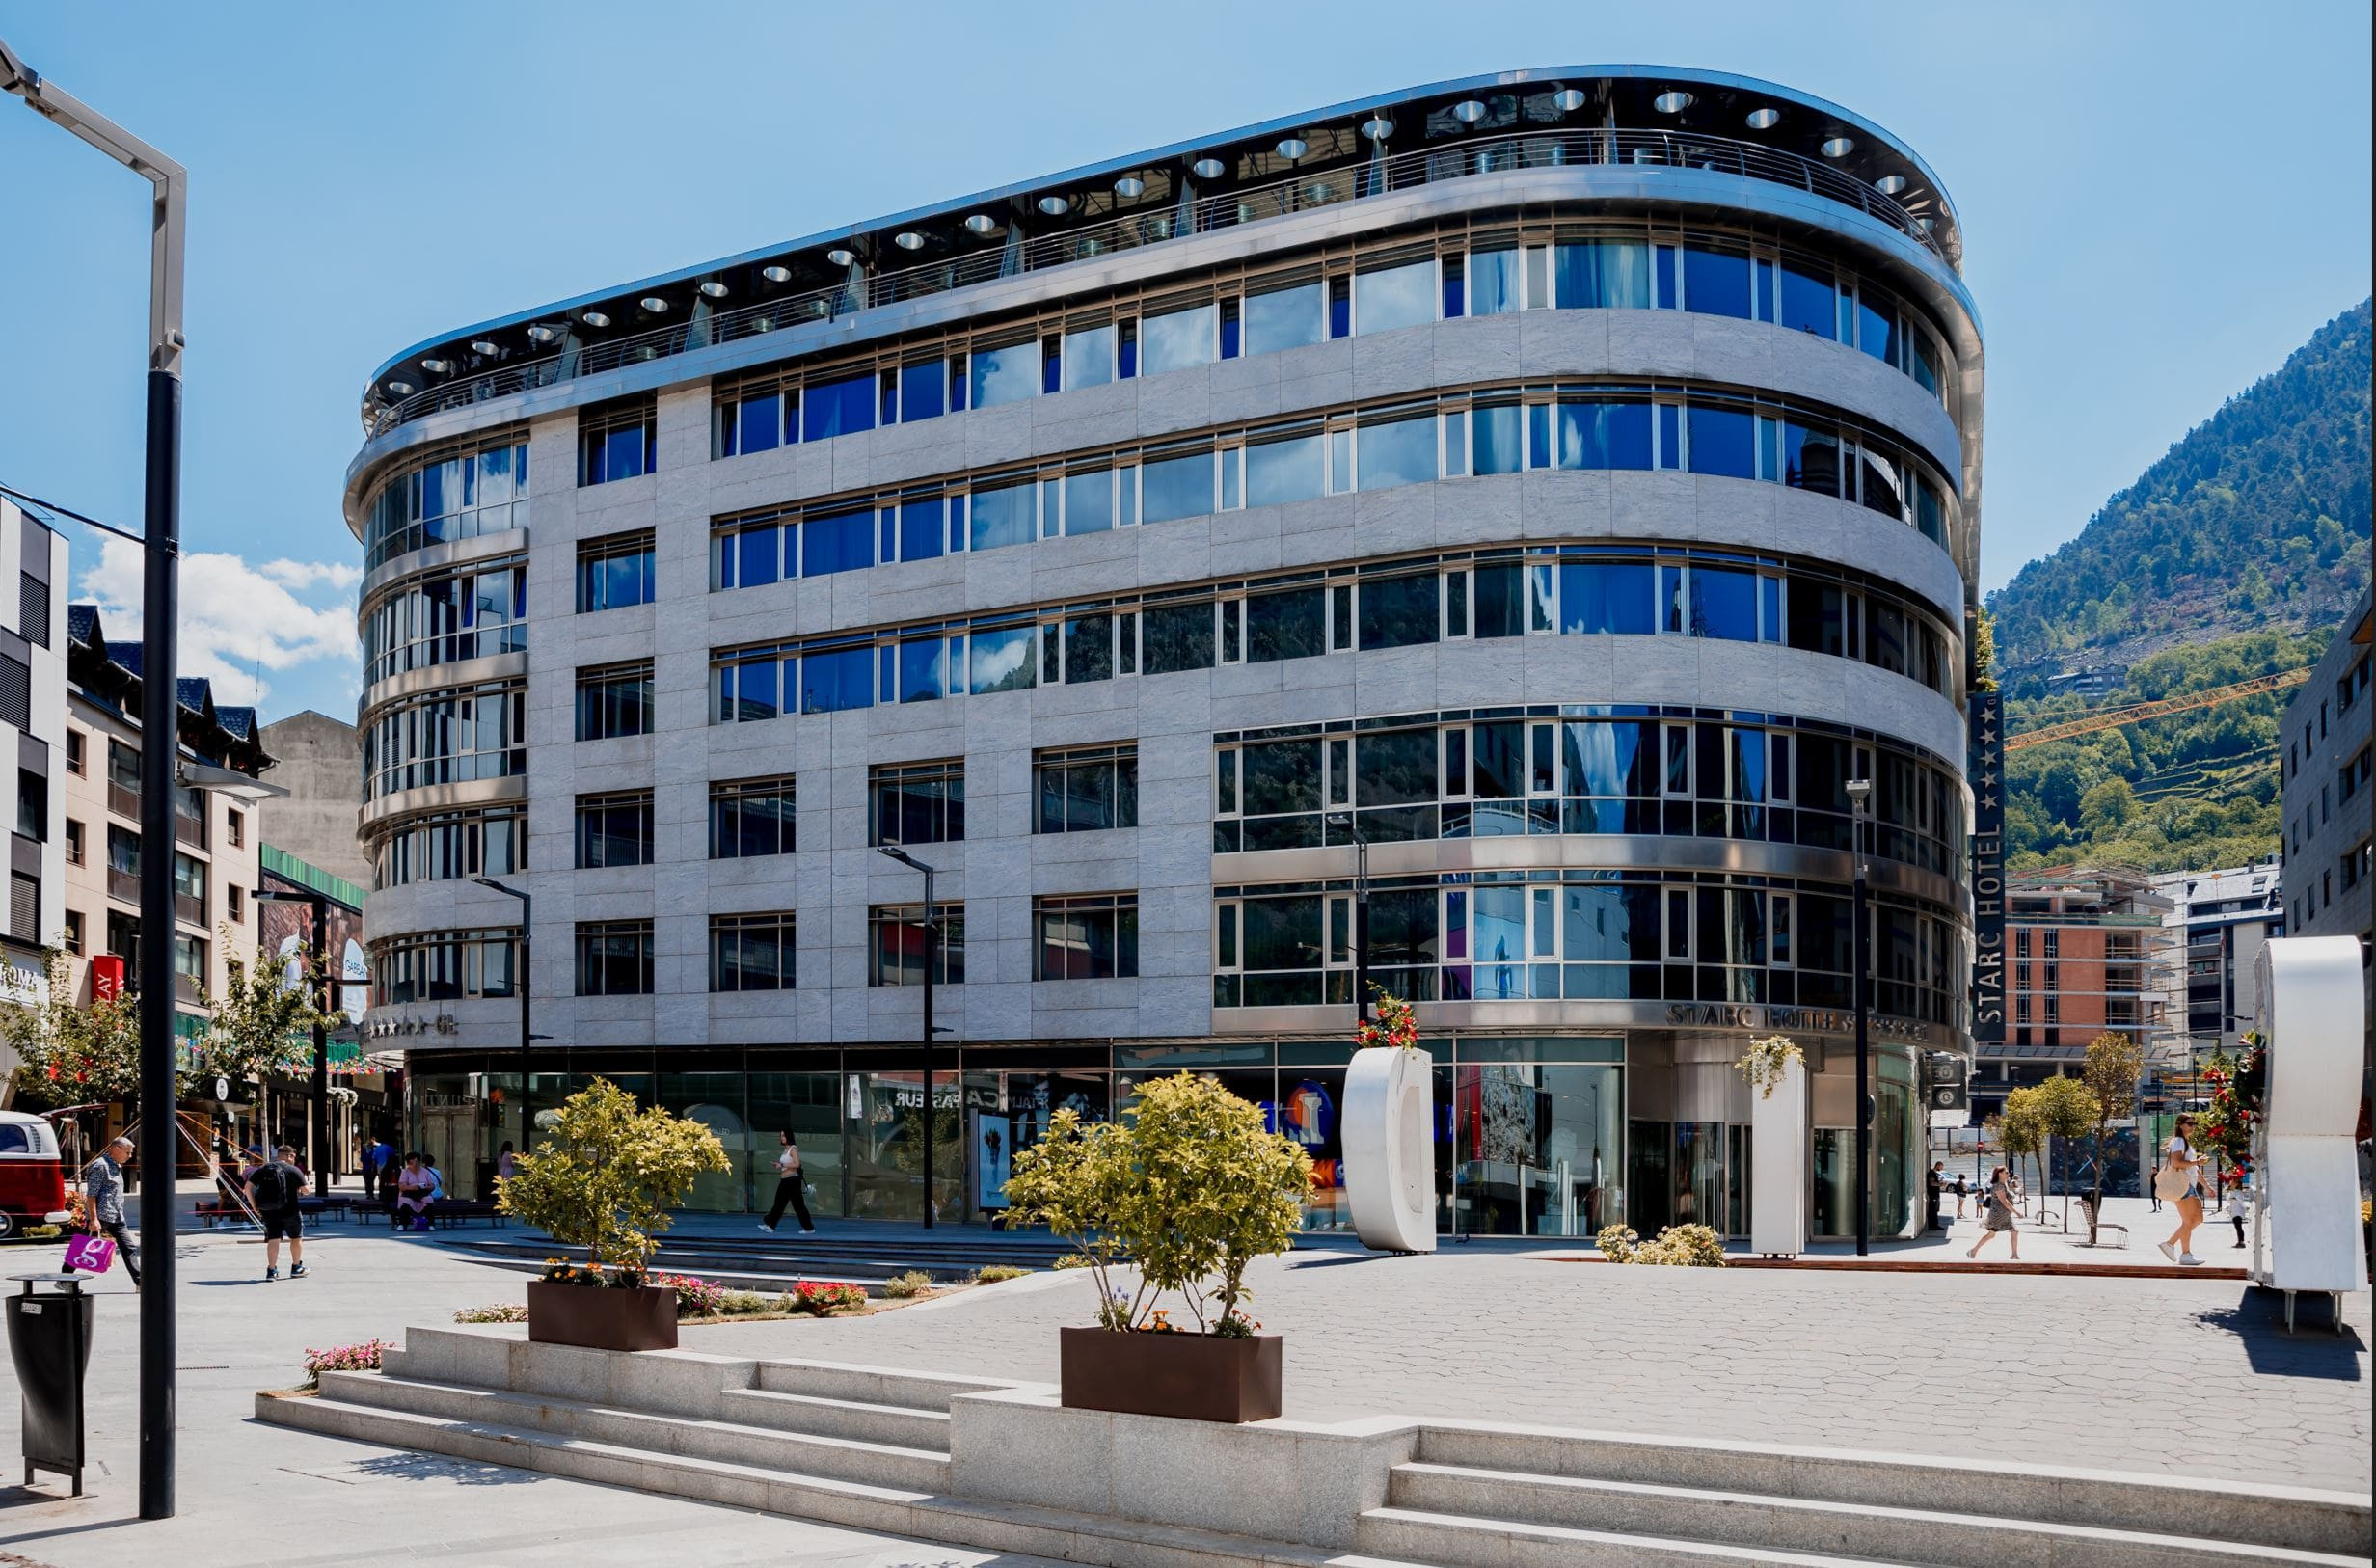 ​Pierre Vacances se expande en Andorra con la apertura del nuevo Hotel Starc